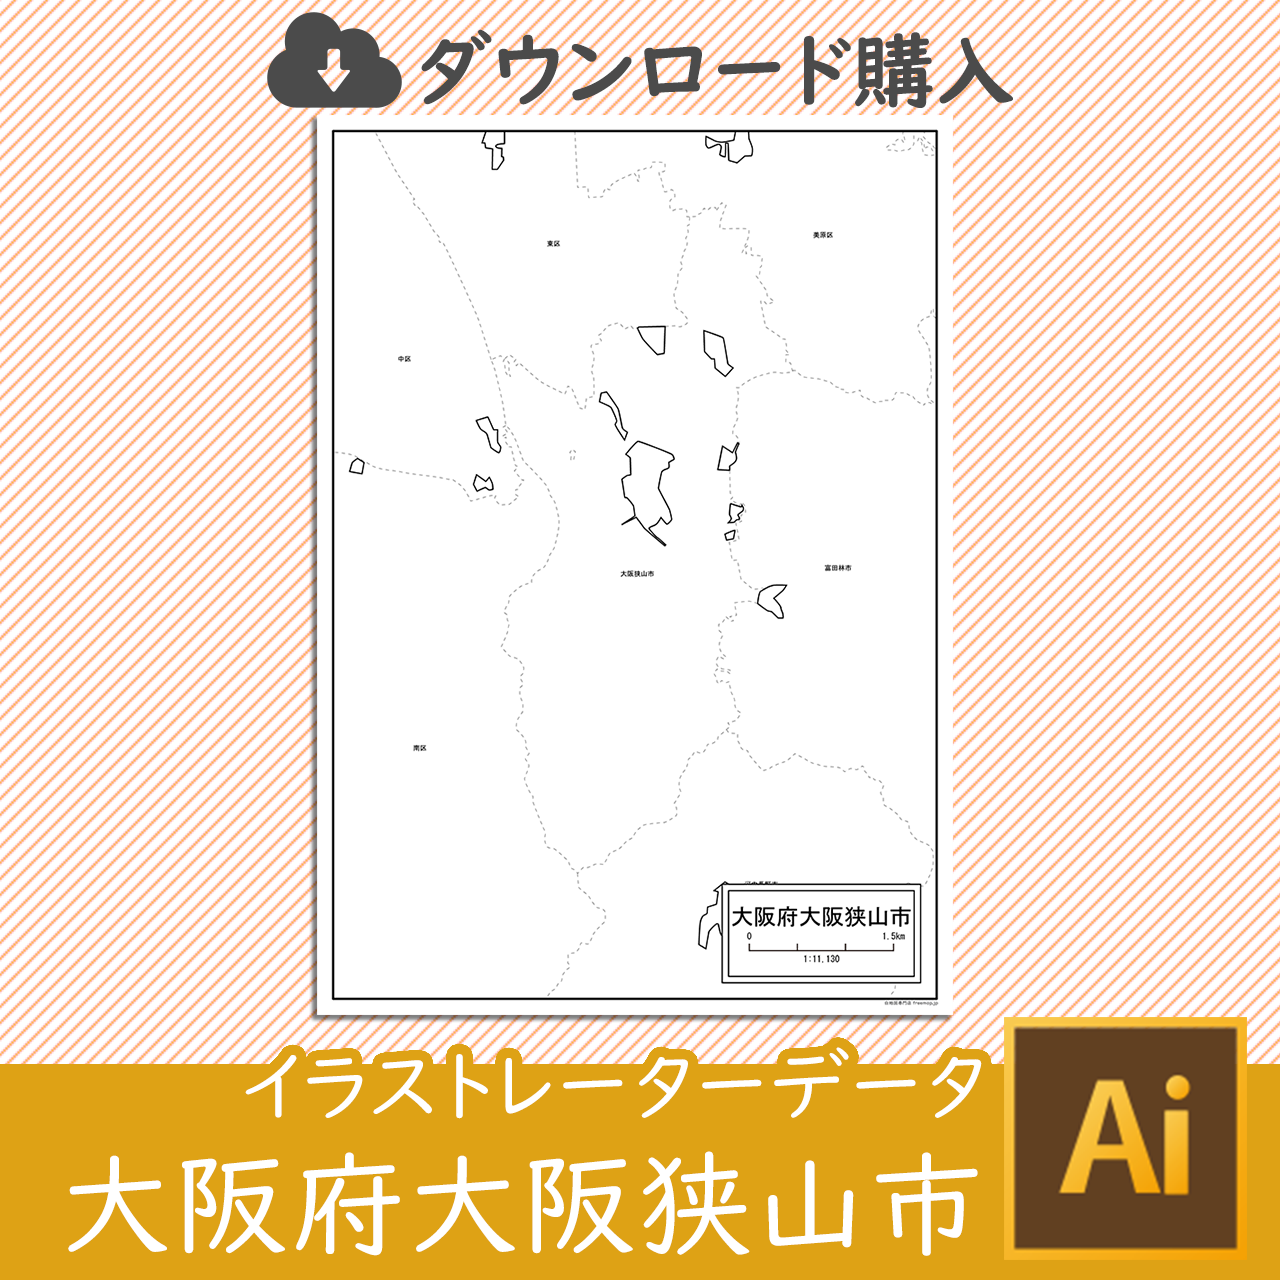 大阪狭山市のaiデータのサムネイル画像